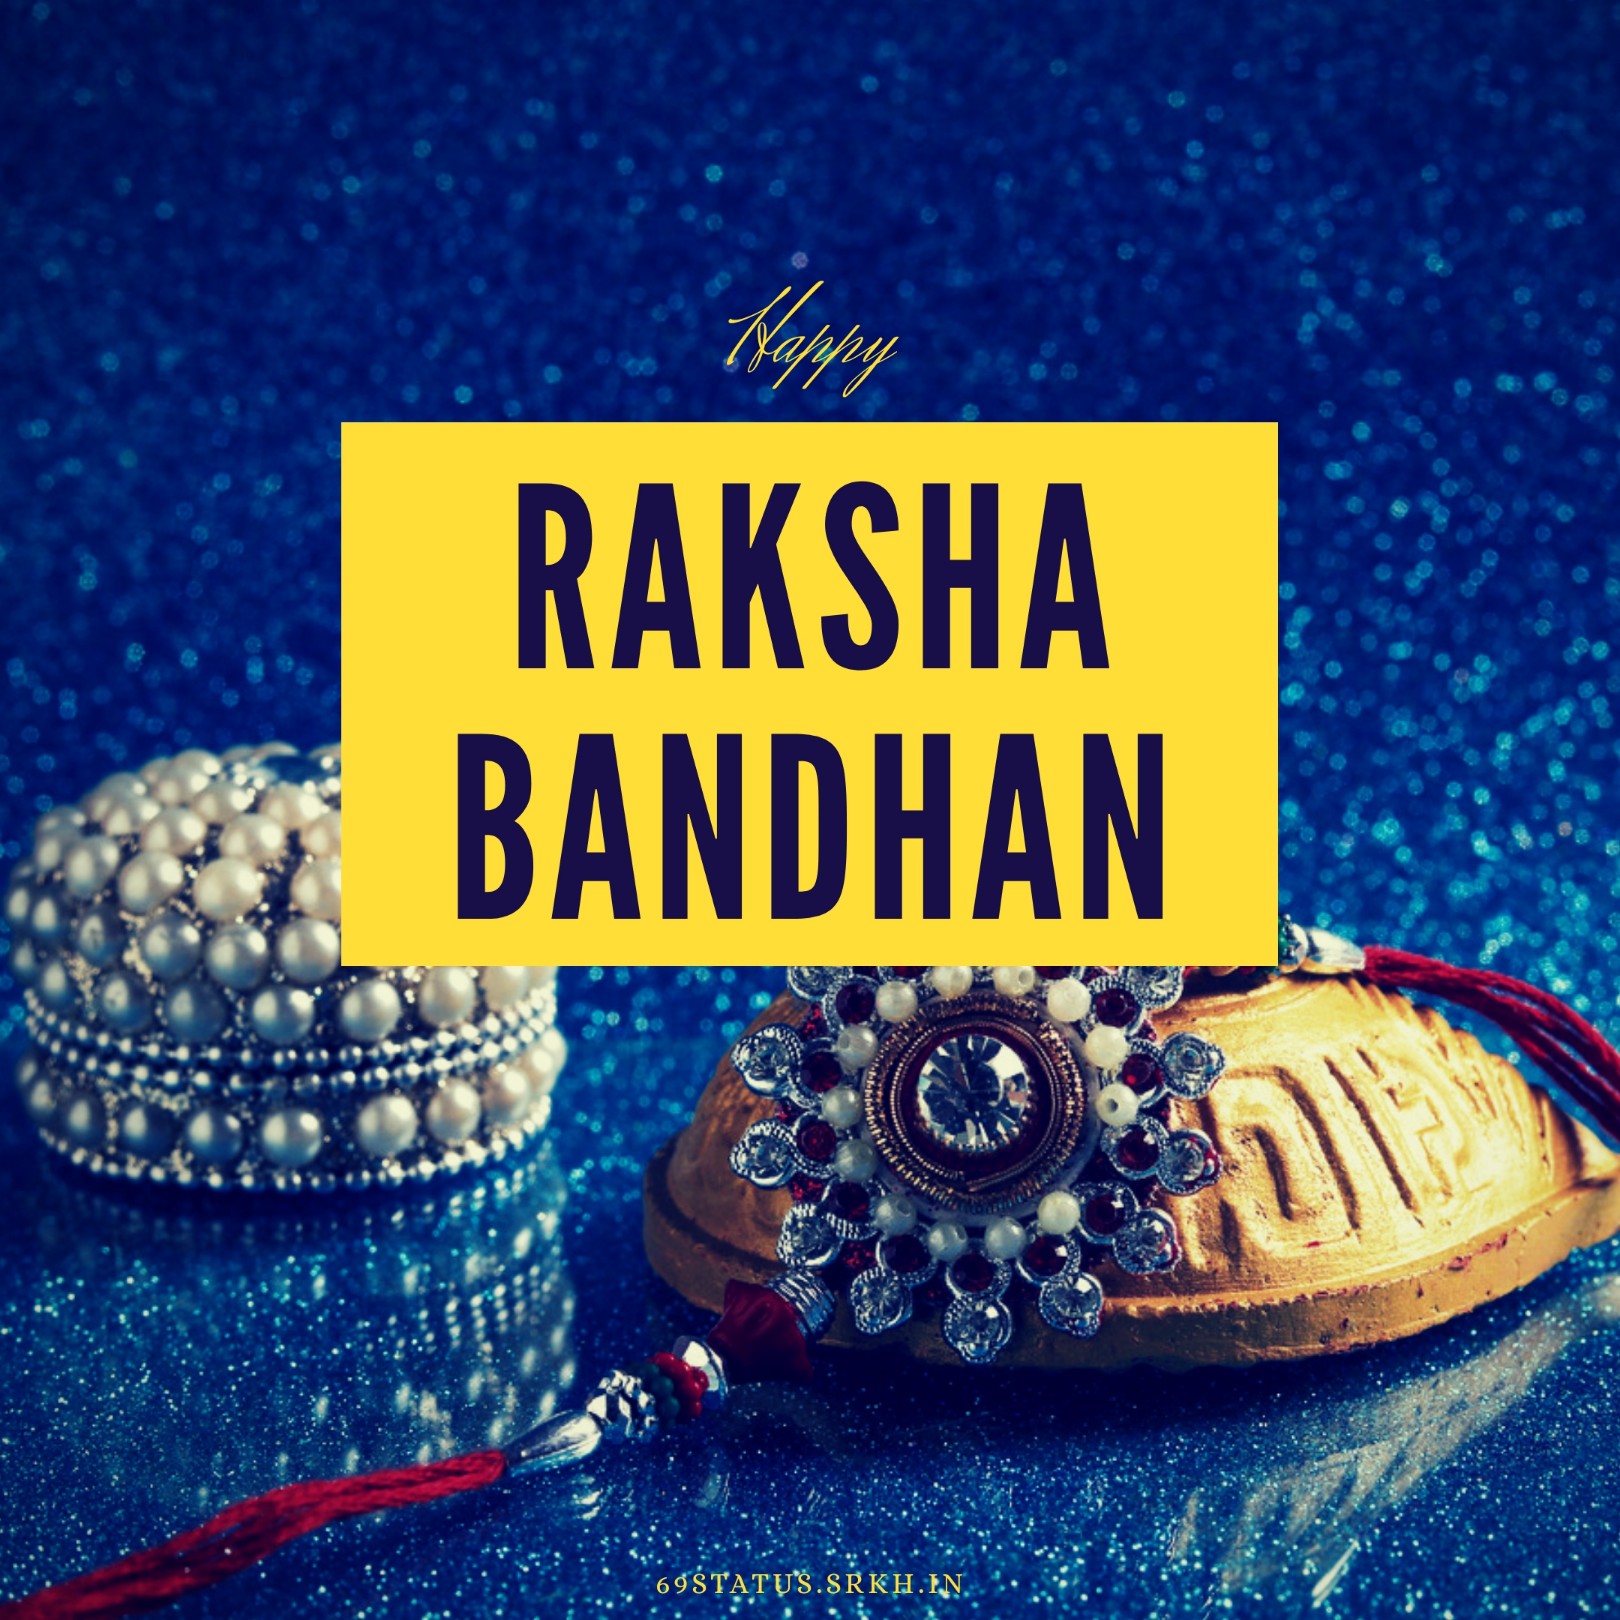 Raksha Bandhan Photo Images